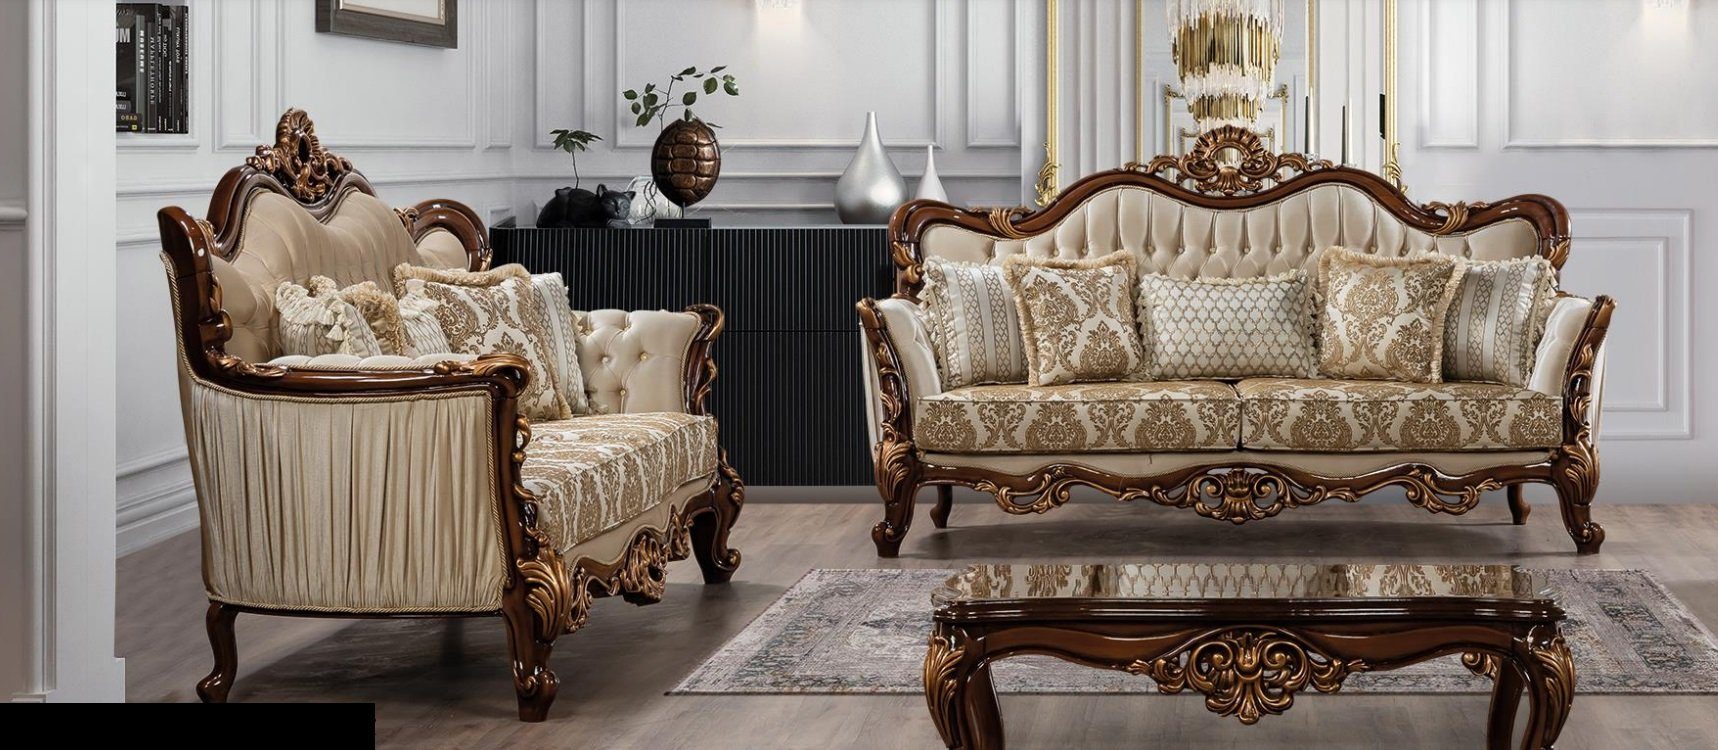 JVmoebel Wohnzimmer-Set, Luxus Garnitur Sofagarnitur 3+3 Sitzer Couchtisch Couch Sofas Set